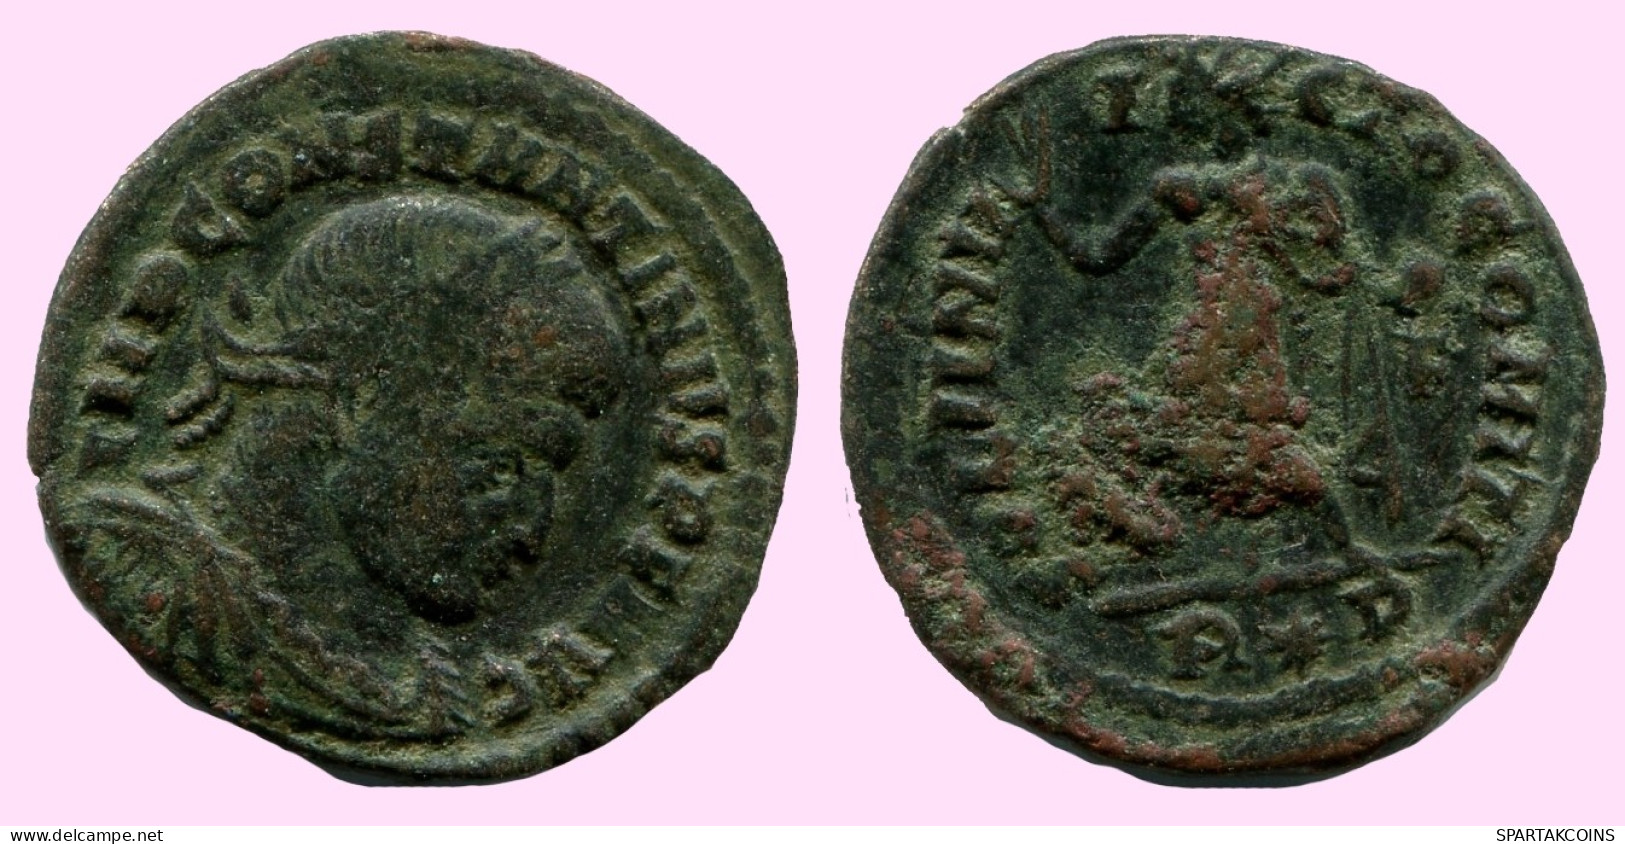 CONSTANTINE I Authentische Antike RÖMISCHEN KAISERZEIT Münze #ANC12242.12.D.A - The Christian Empire (307 AD Tot 363 AD)